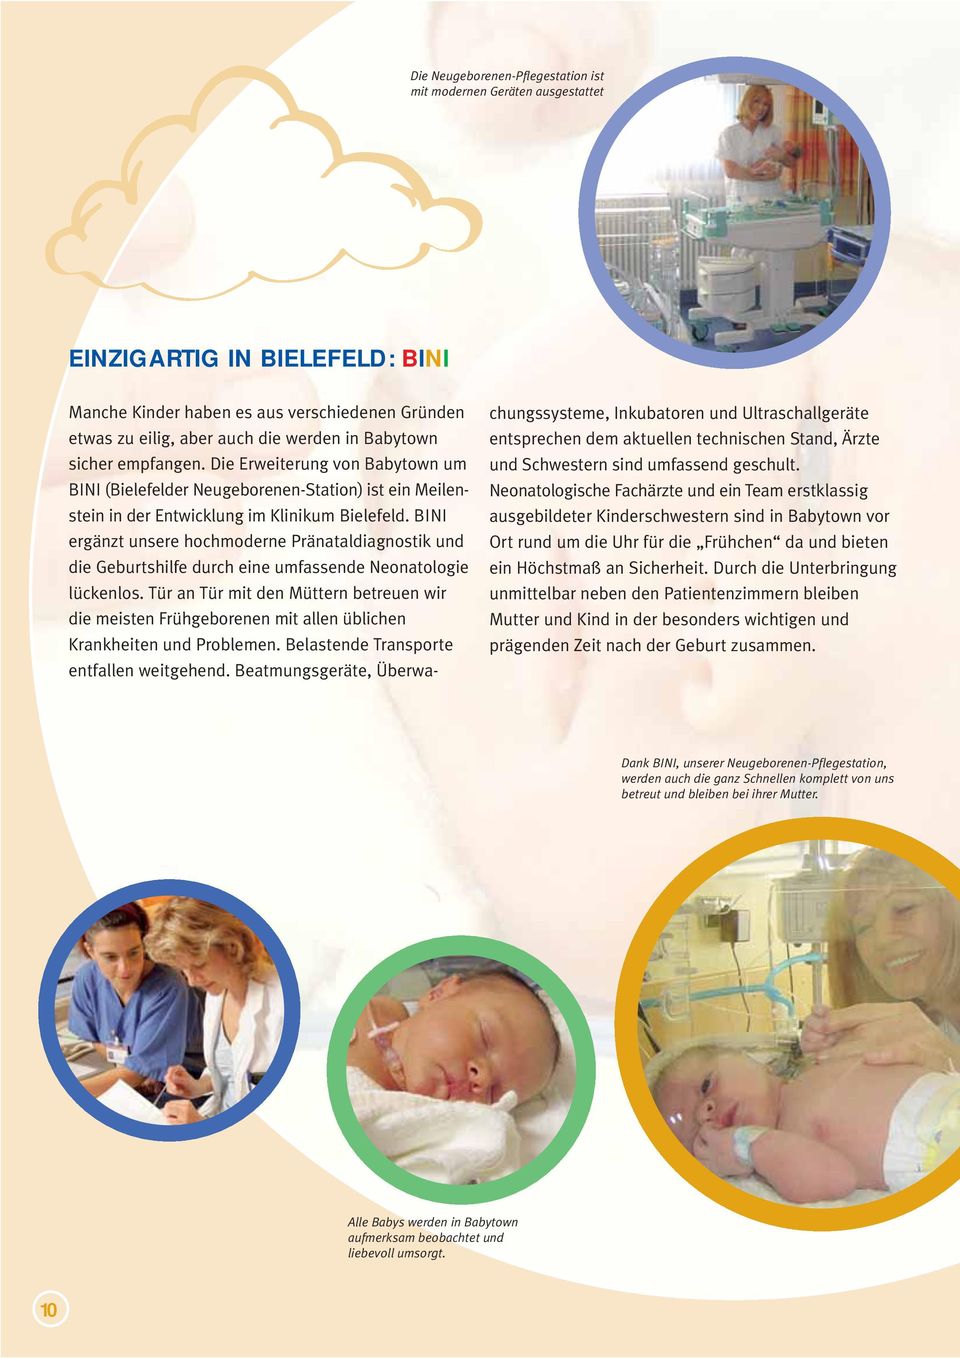 BINI ergänzt unsere hochmoderne Pränataldiagnostik und die Geburtshilfe durch eine umfassende Neonatologie lückenlos.